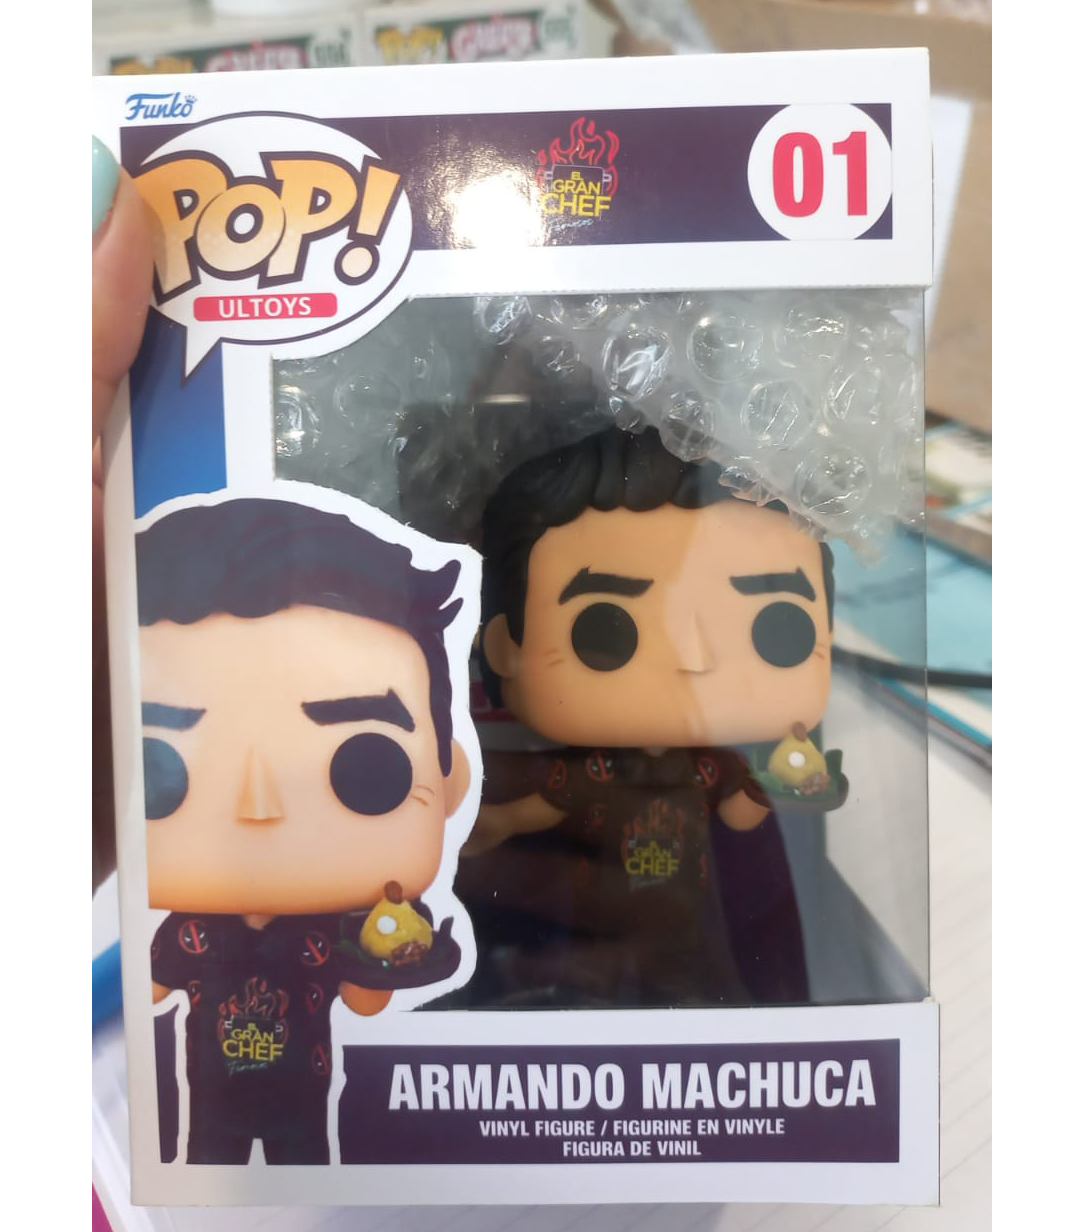 ARMANDO MACHUCA EL GRAN CHEF FUNKO POP